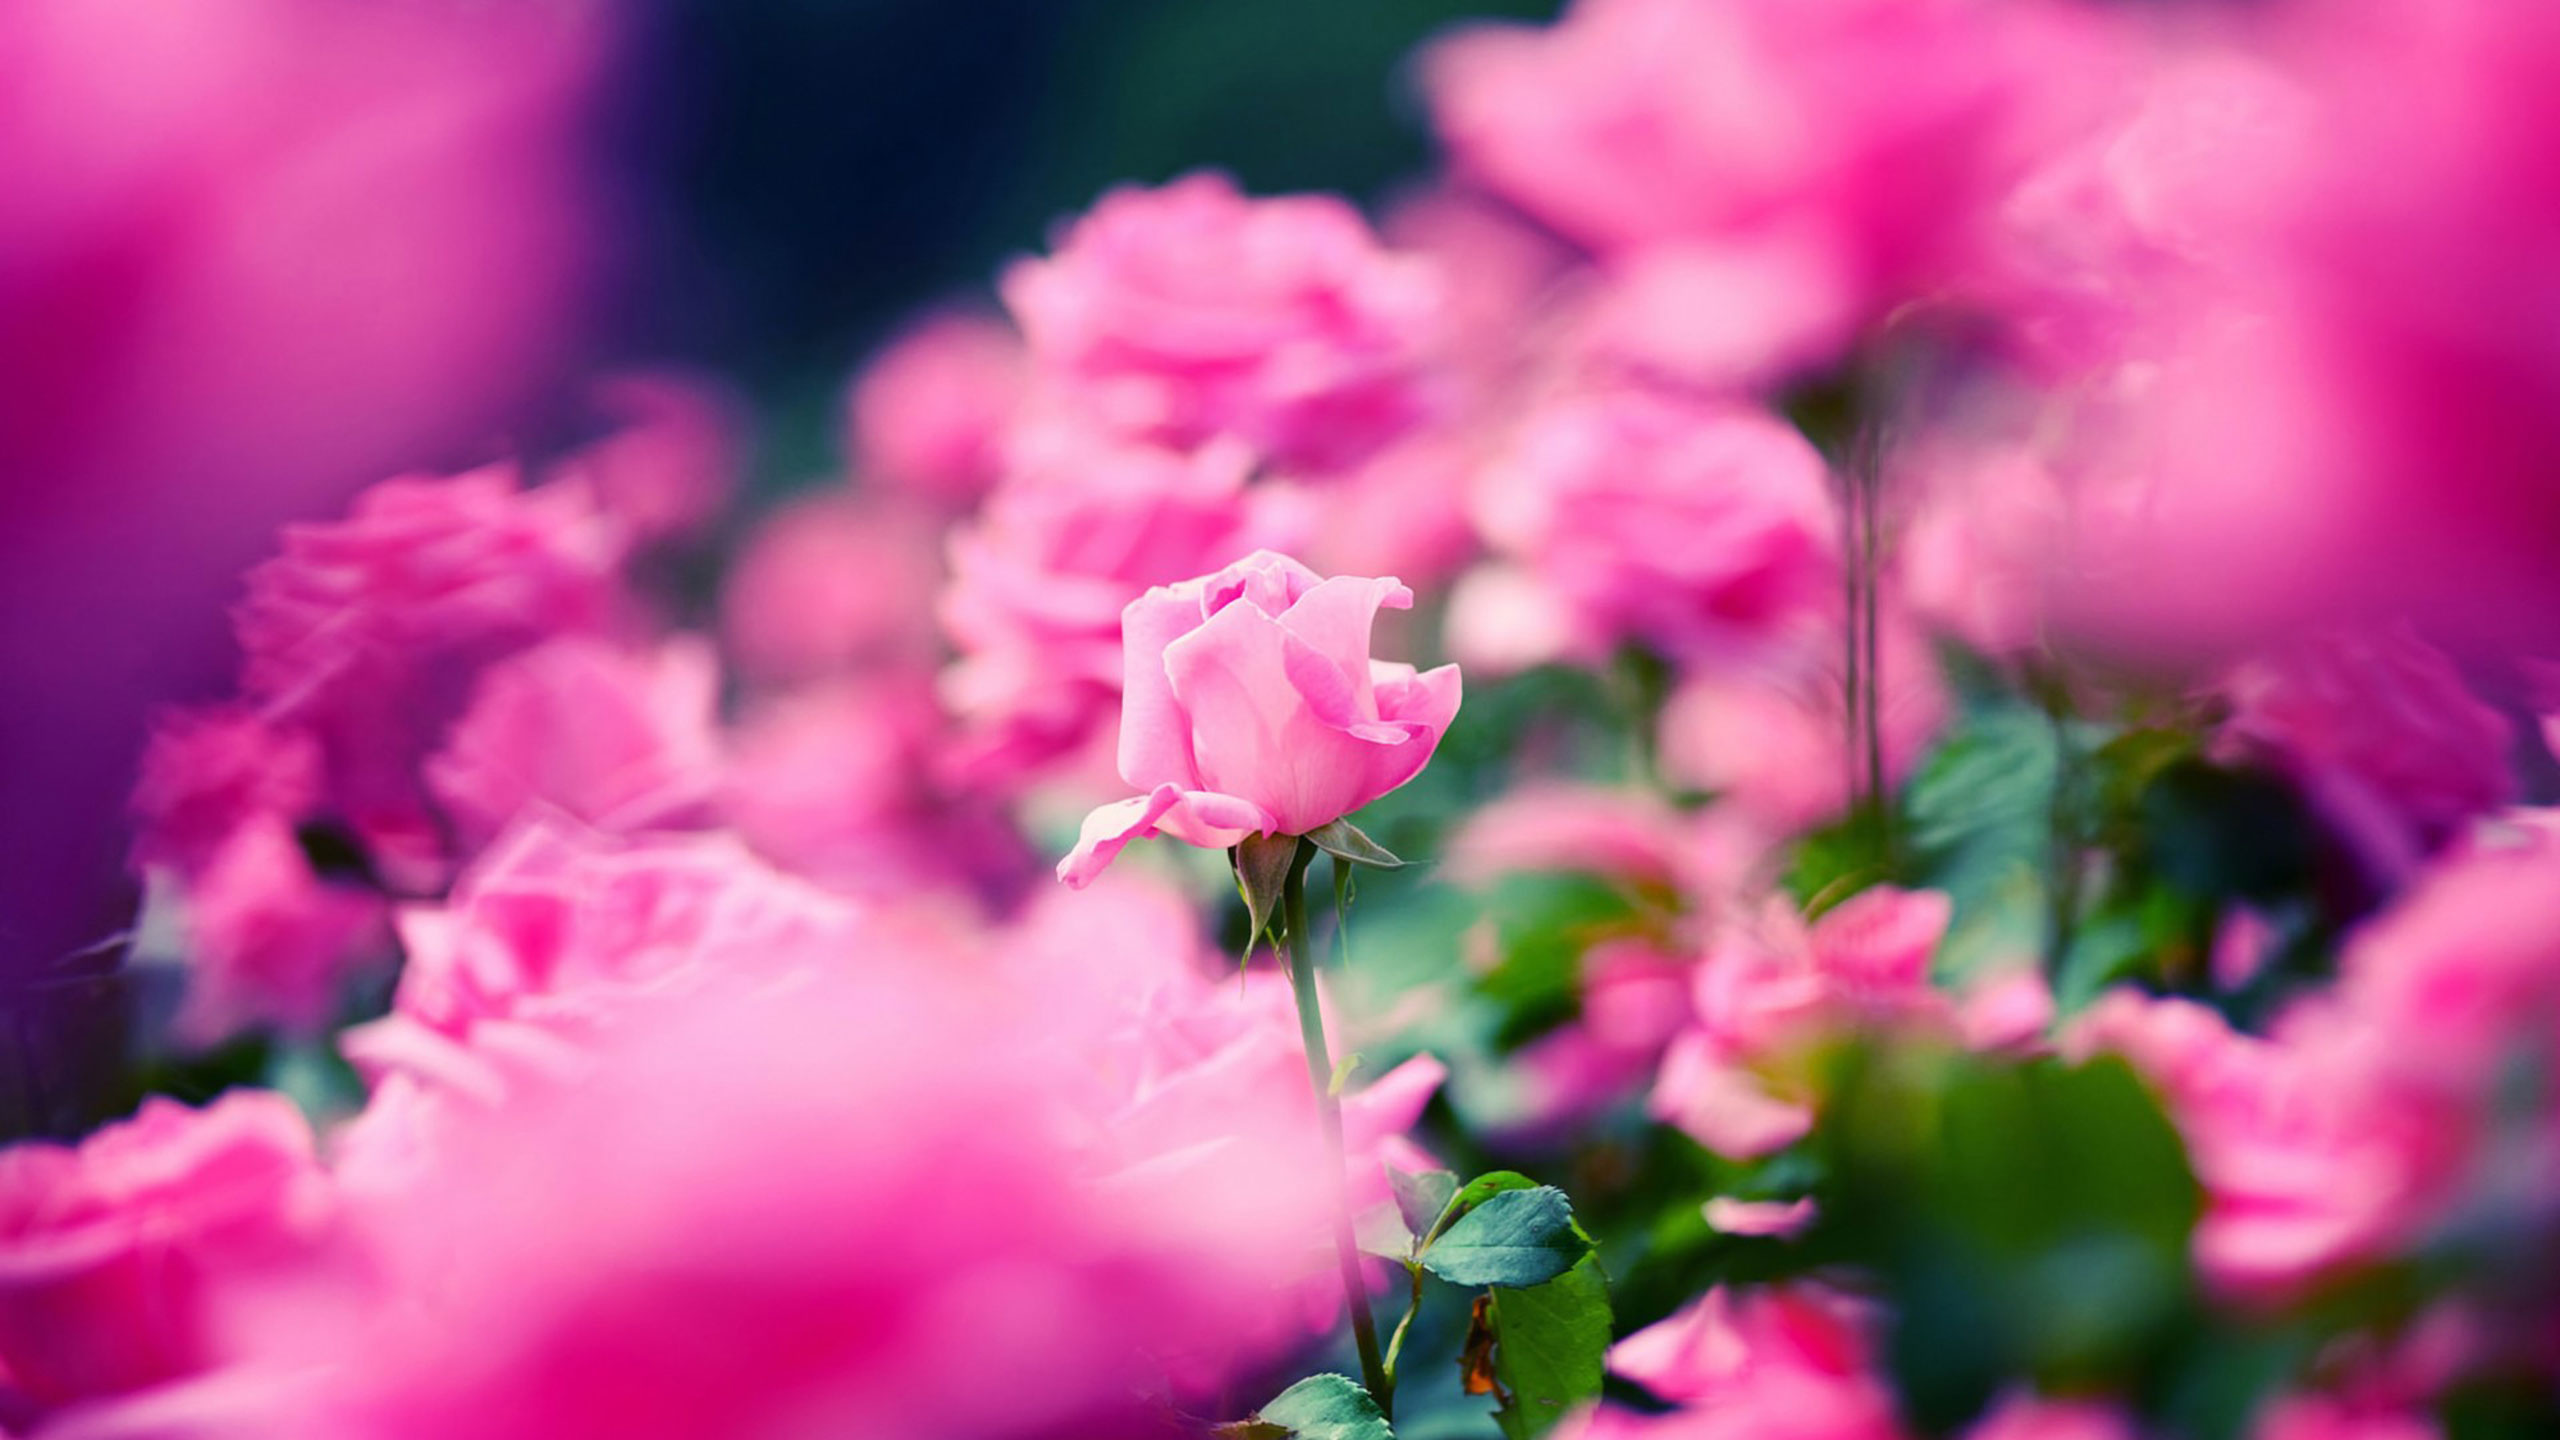 显花植物, 粉红色, 玫瑰花园, 品红色, 弹簧 壁纸 2560x1440 允许